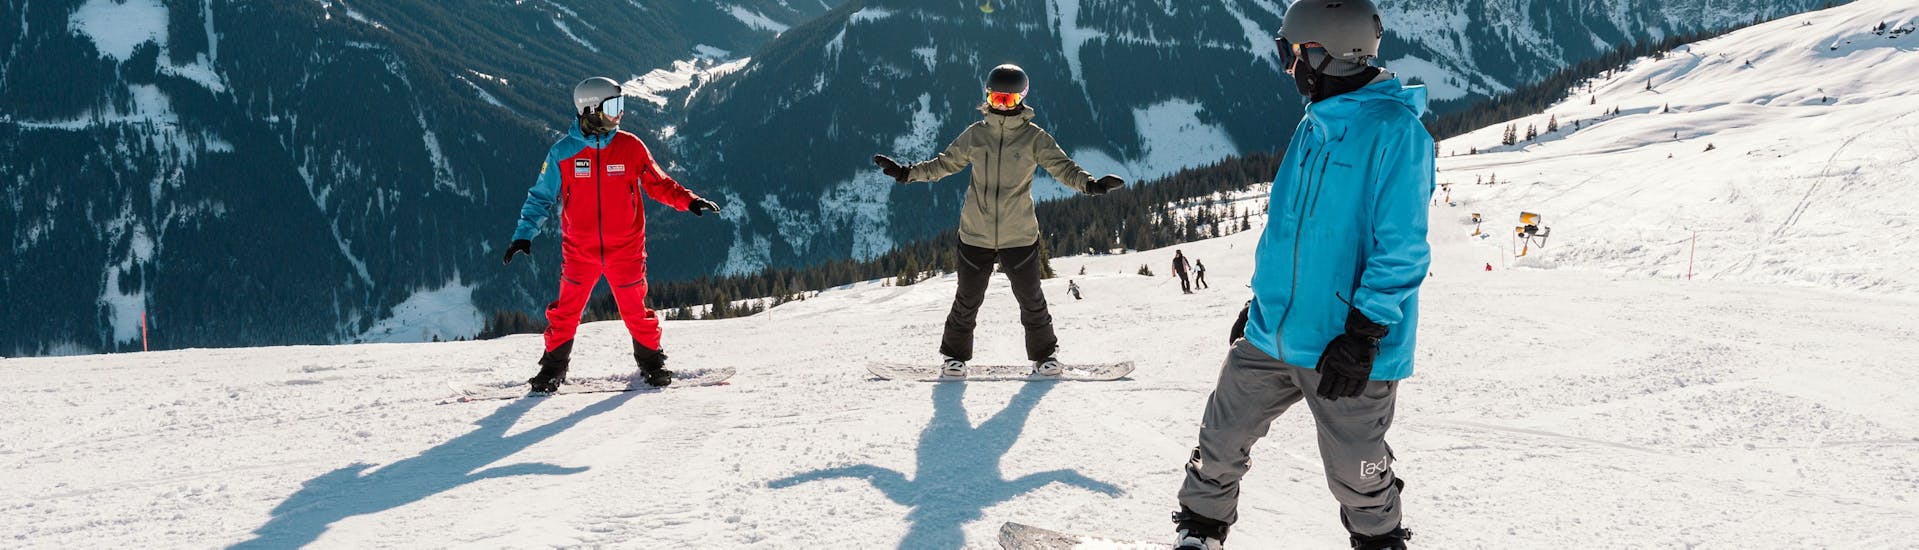 Snowboardlessen voor volwassenen (vanaf 15 j.) voor beginners.